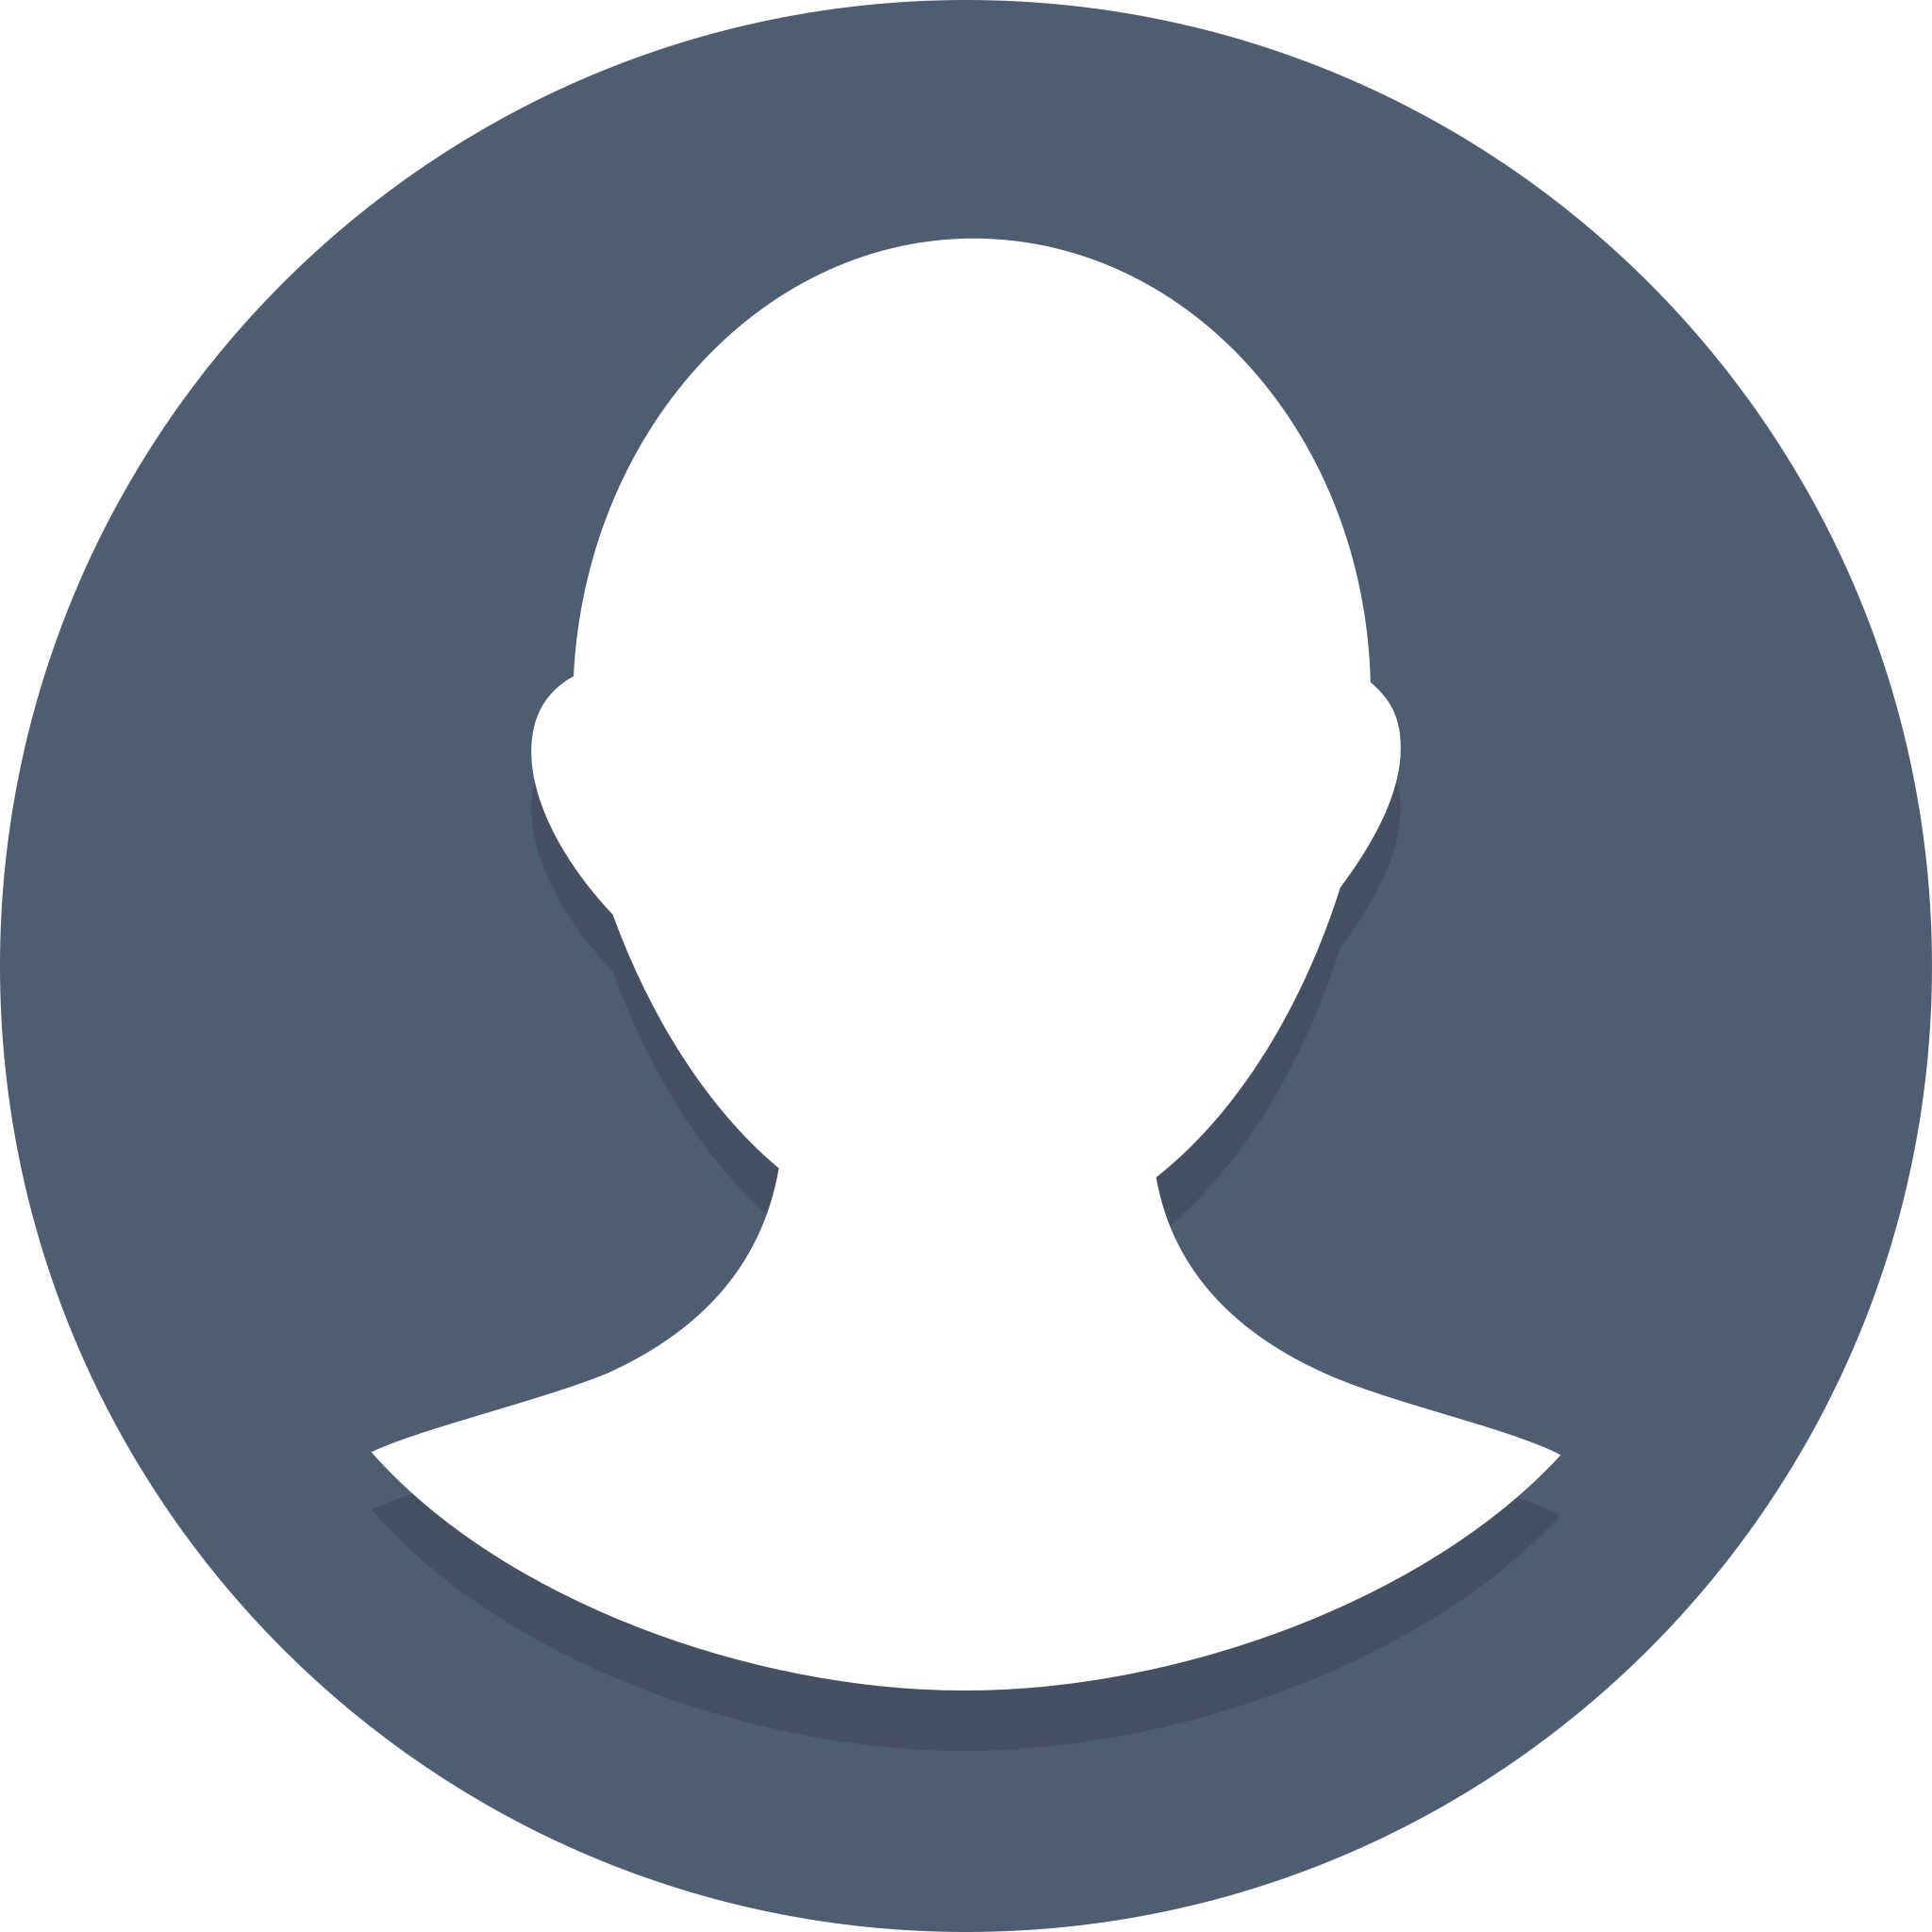 Иконка профиля. Значок аватара. Круглый аватар. Изображение пользователя.